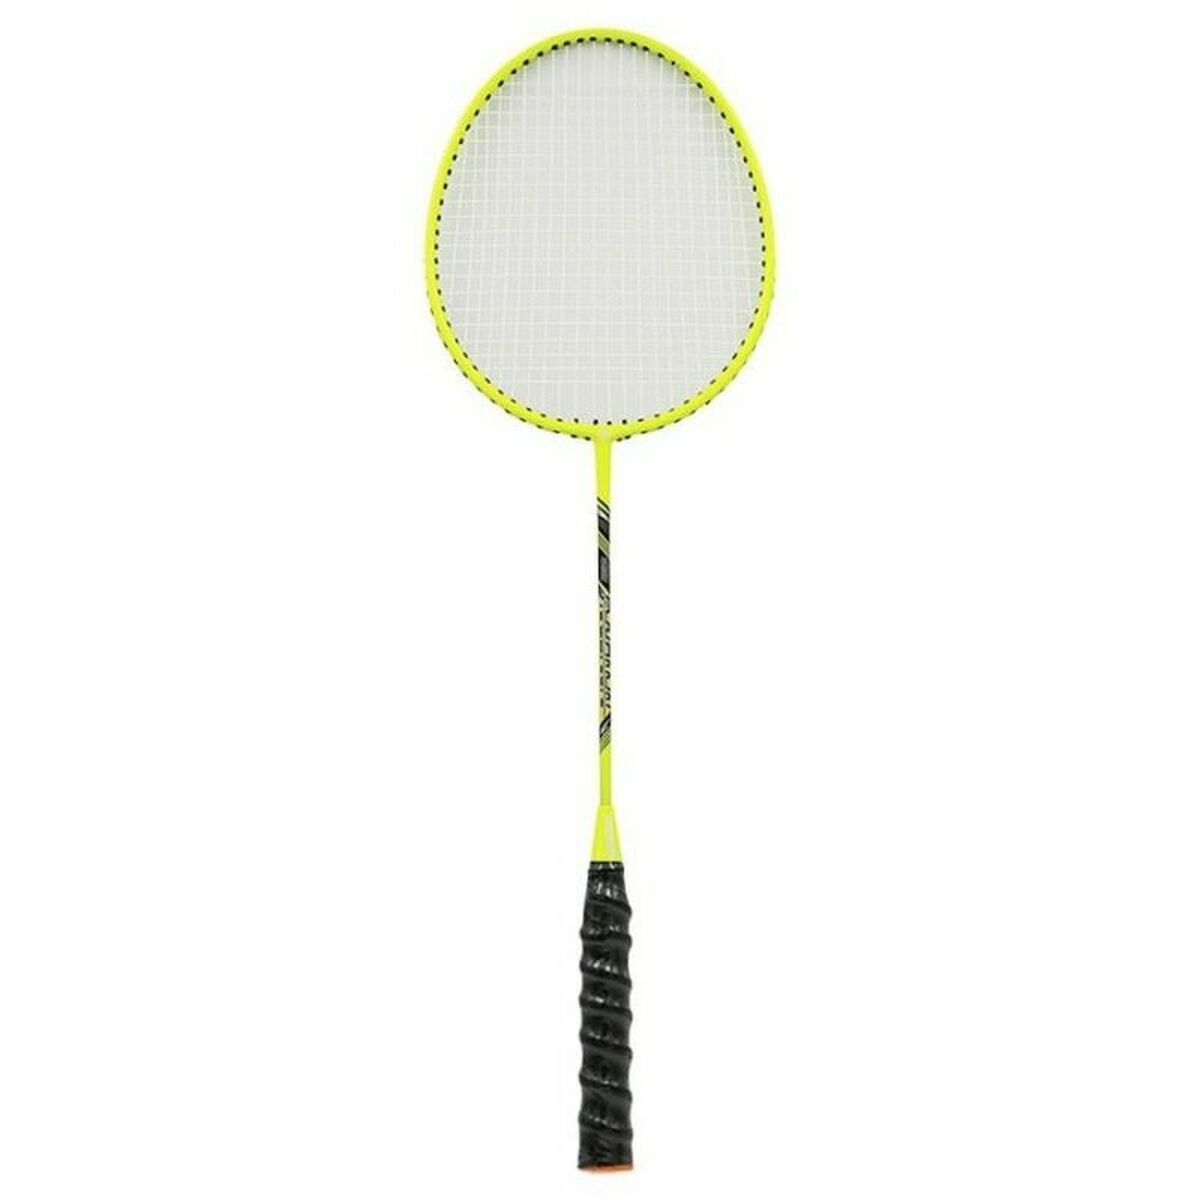 Lote de 10 Raquetas Badminton B500 (Jr-Sr) - Tienda online de